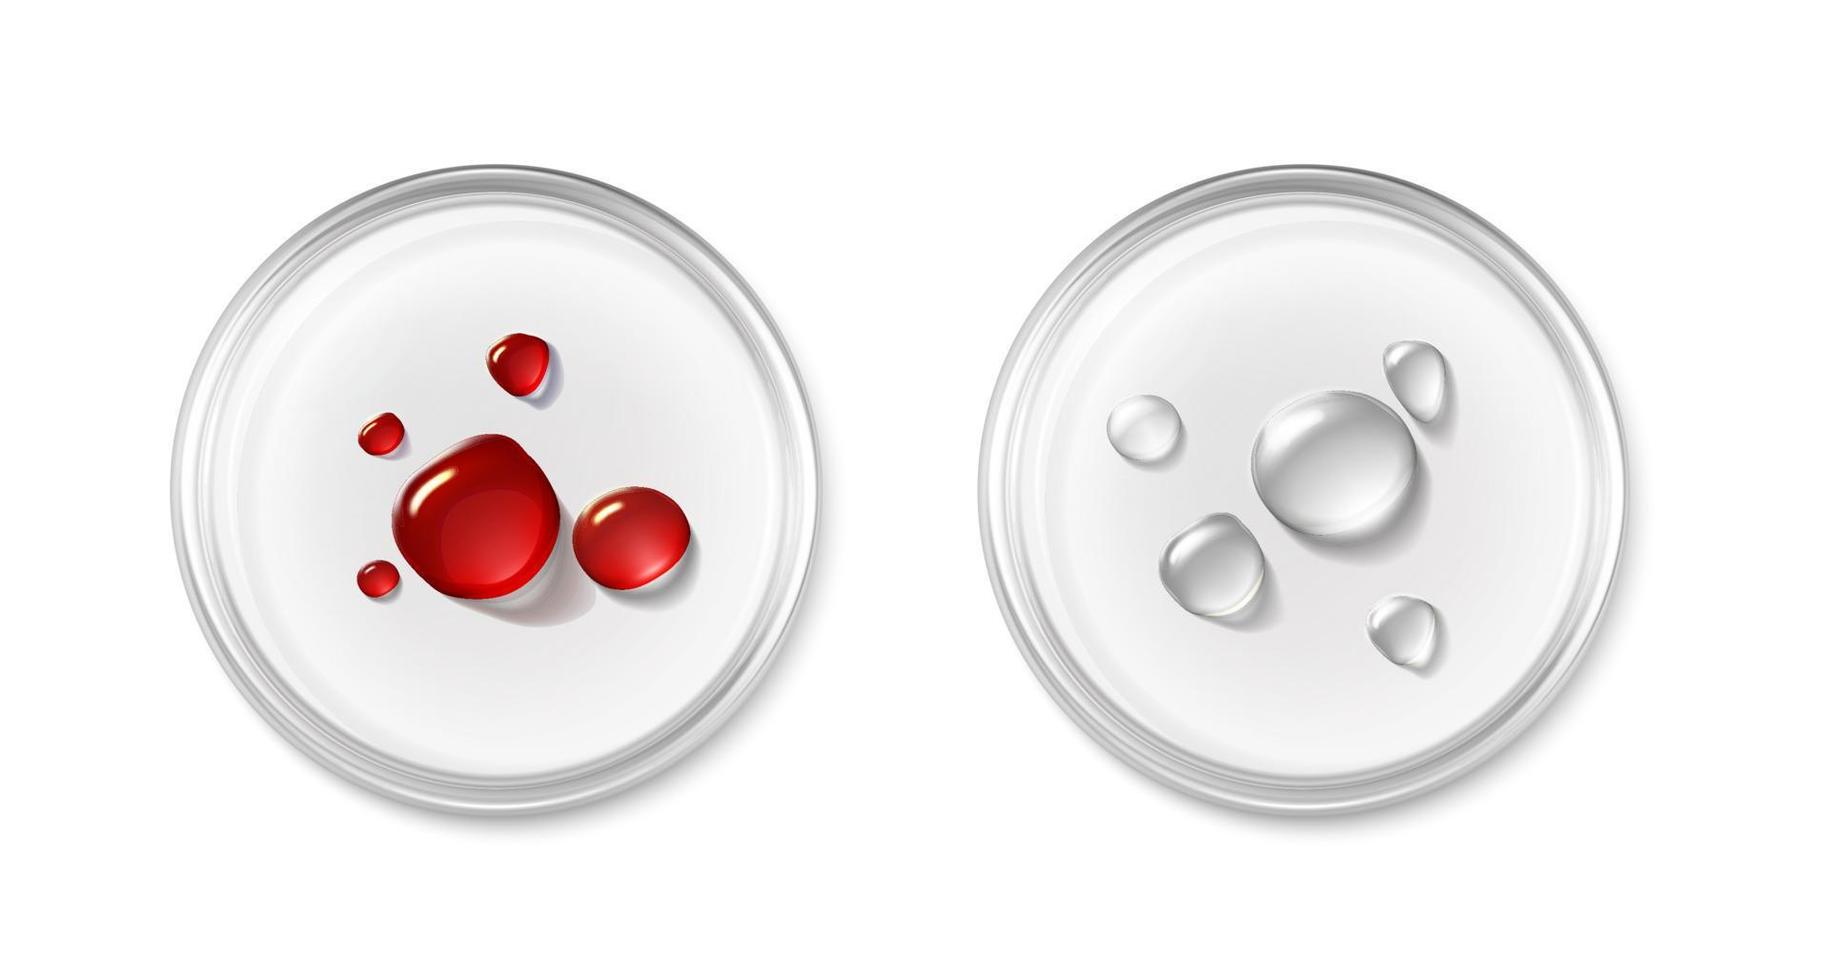 3d realistisch Vektor Symbol. Petri Gericht mit fallen von Blut und kosmetisch Produkt. Labor und Wissenschaft Ausrüstung. Prüfung und Forschung Labor.